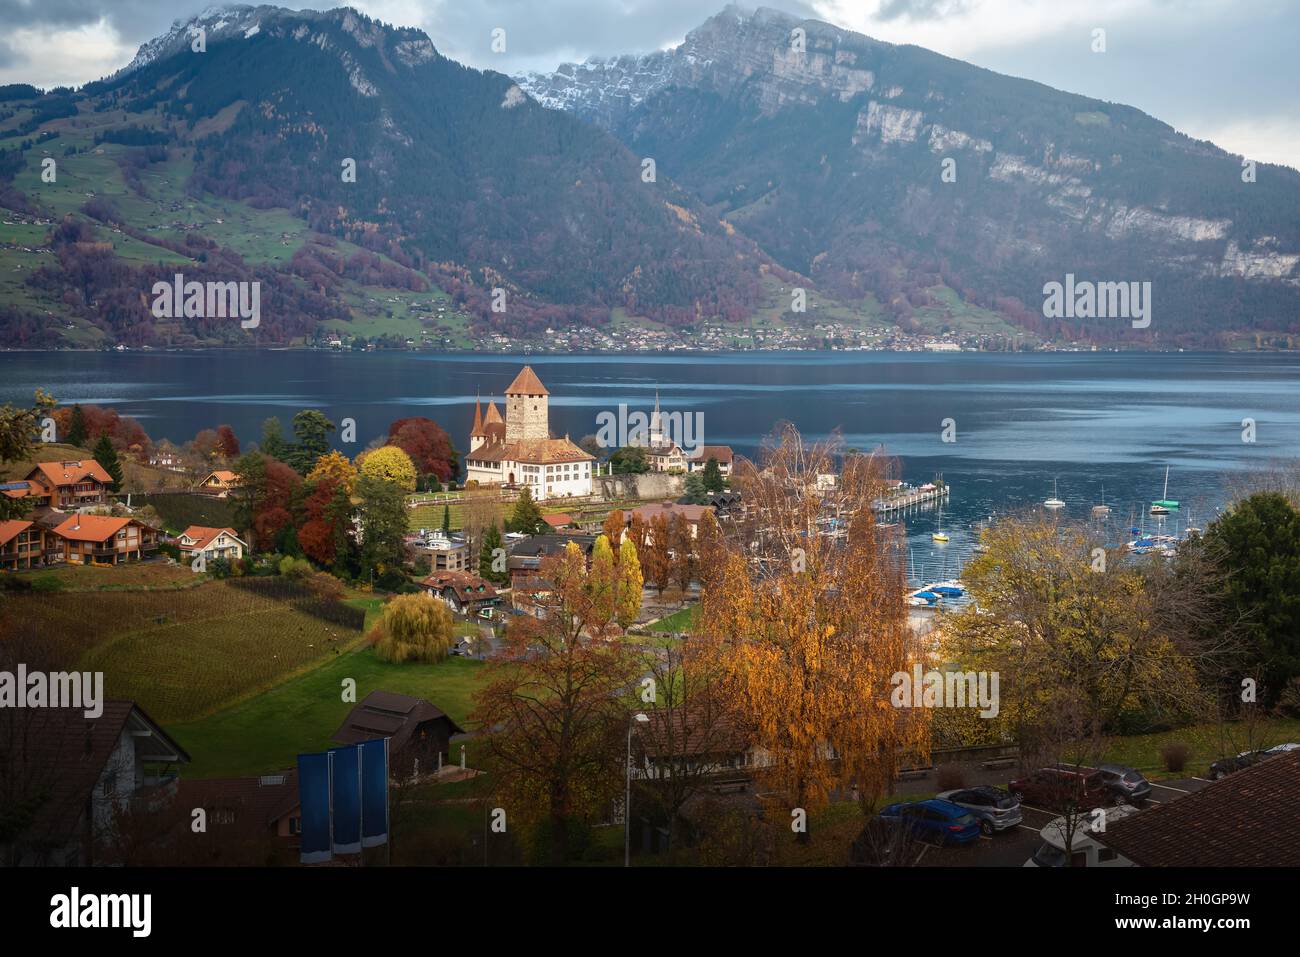 Luftaufnahme der Stadt Spiez mit dem Schloss Spiez und dem Thunersee - Spiez, Schweiz Stockfoto